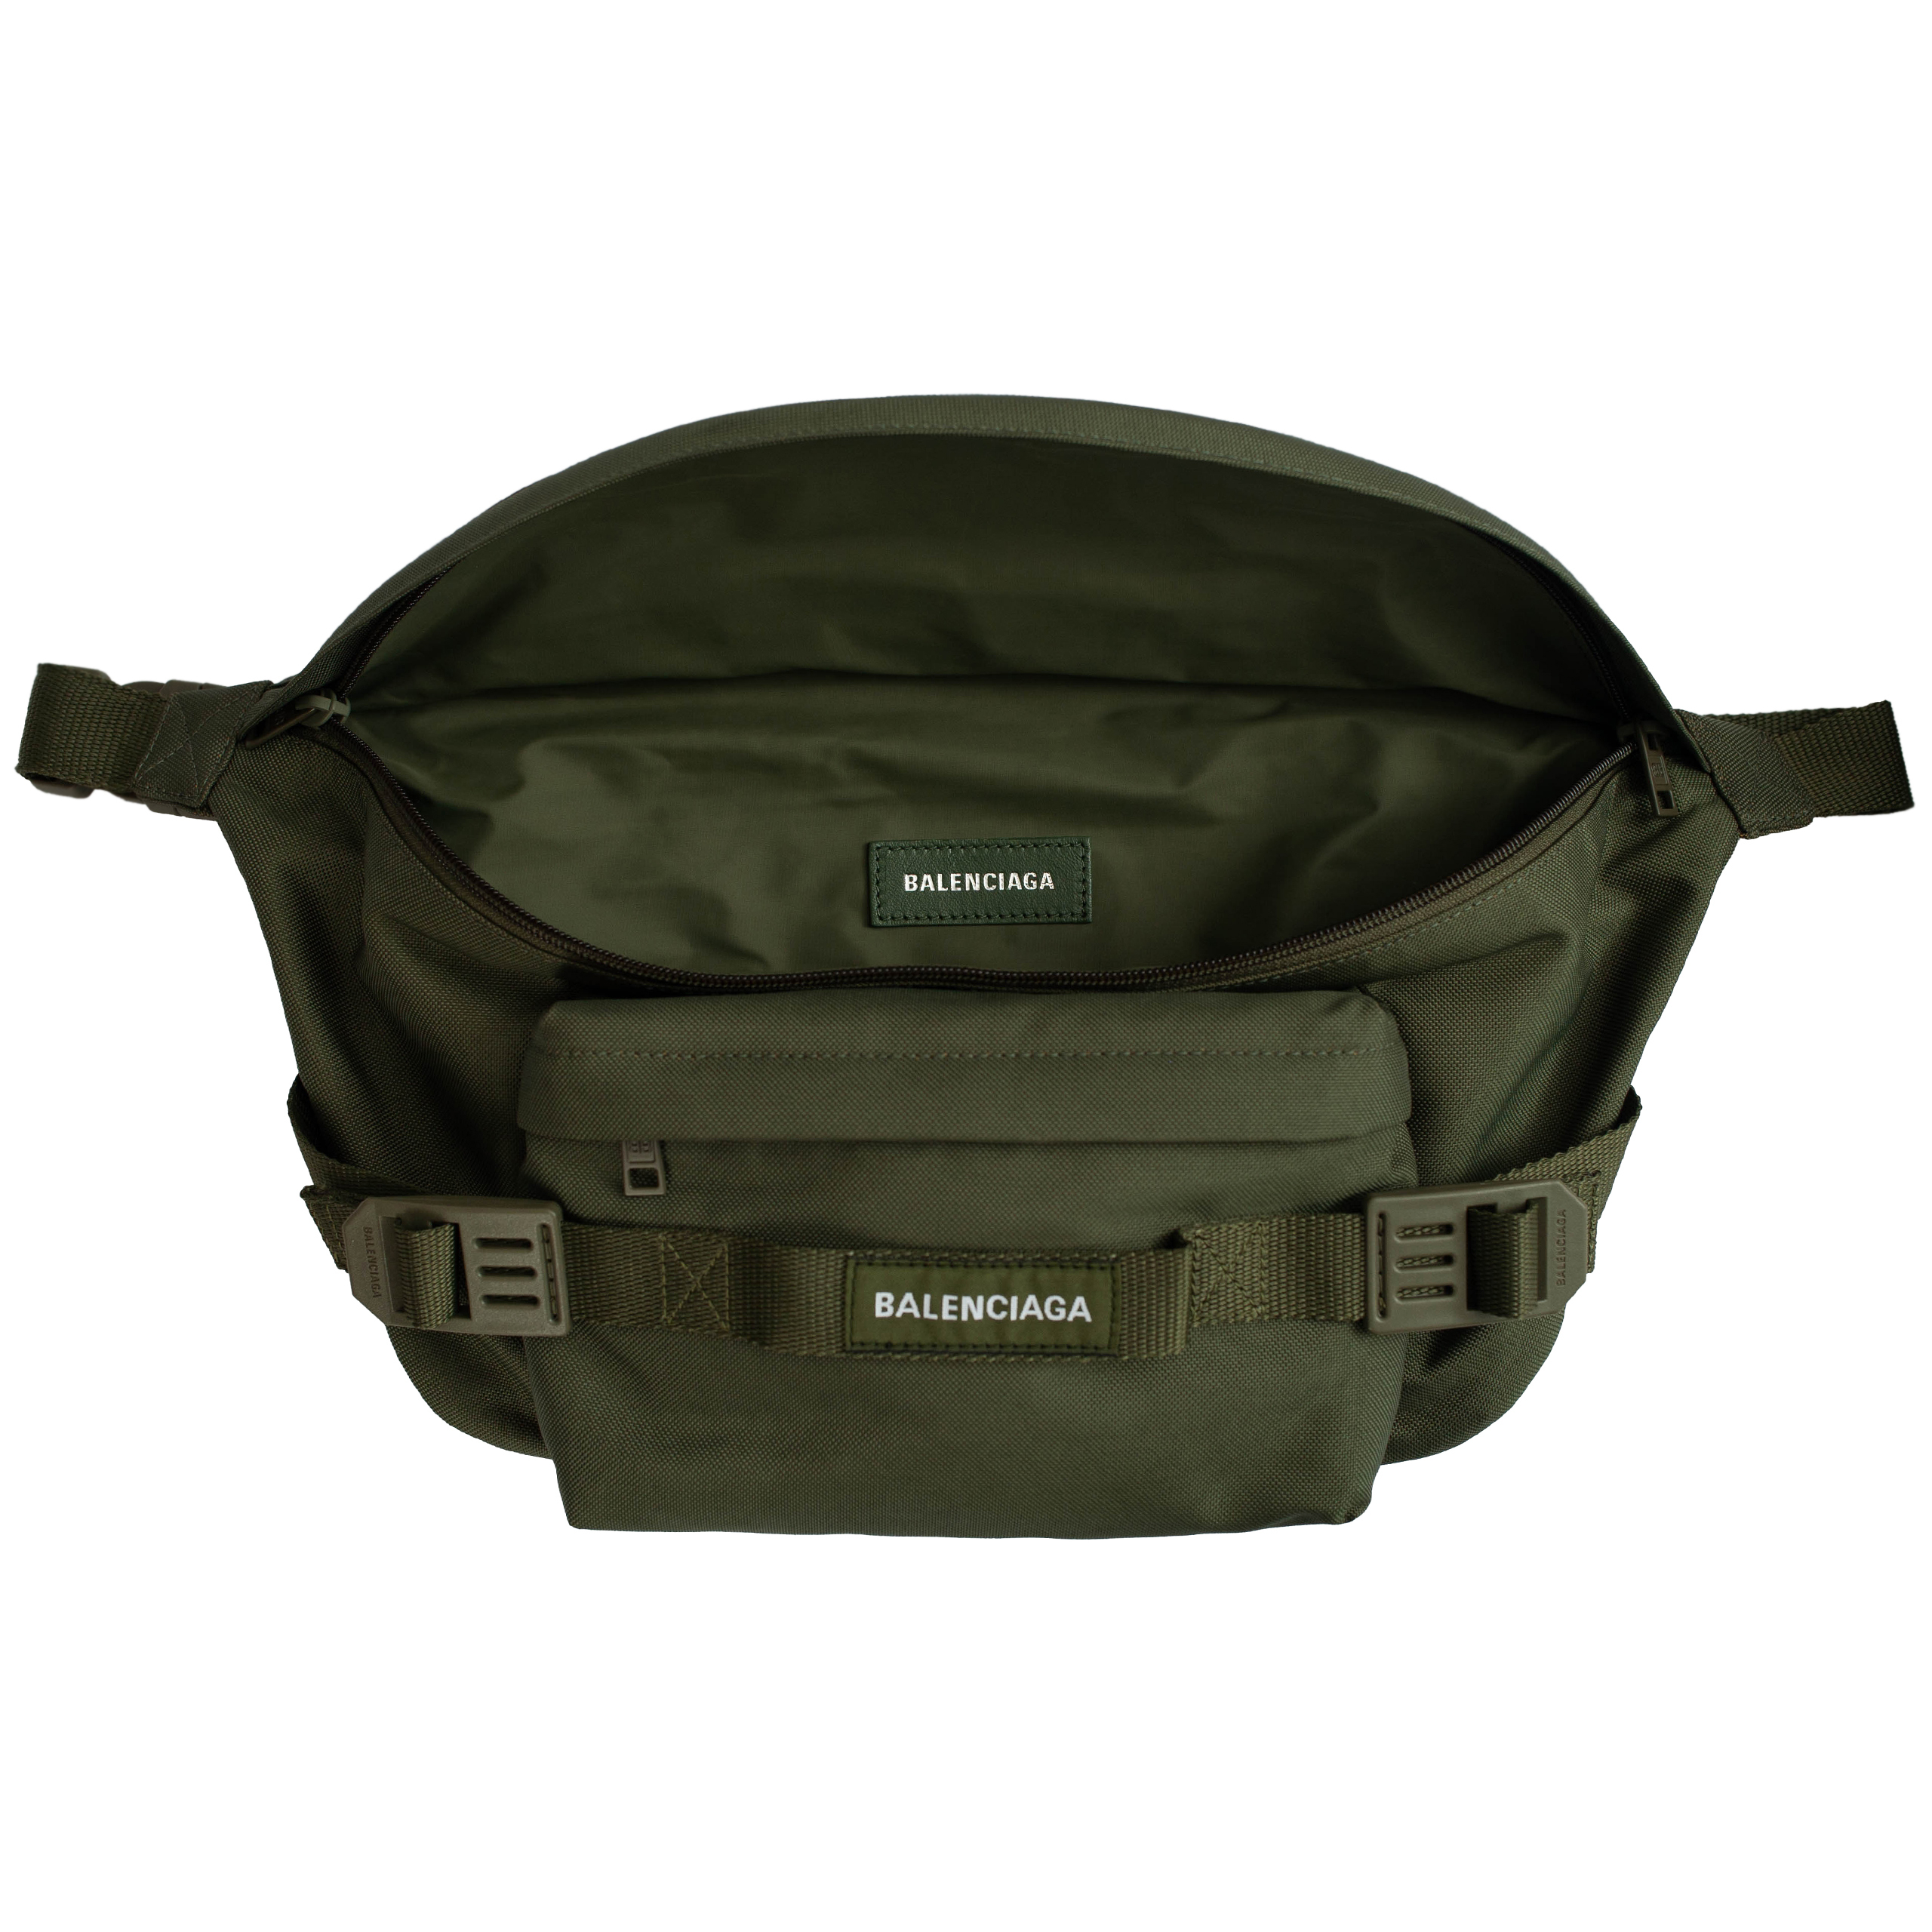 Поясная сумка Army цвета хаки Balenciaga 644035/2BKPI/3318, размер One Size